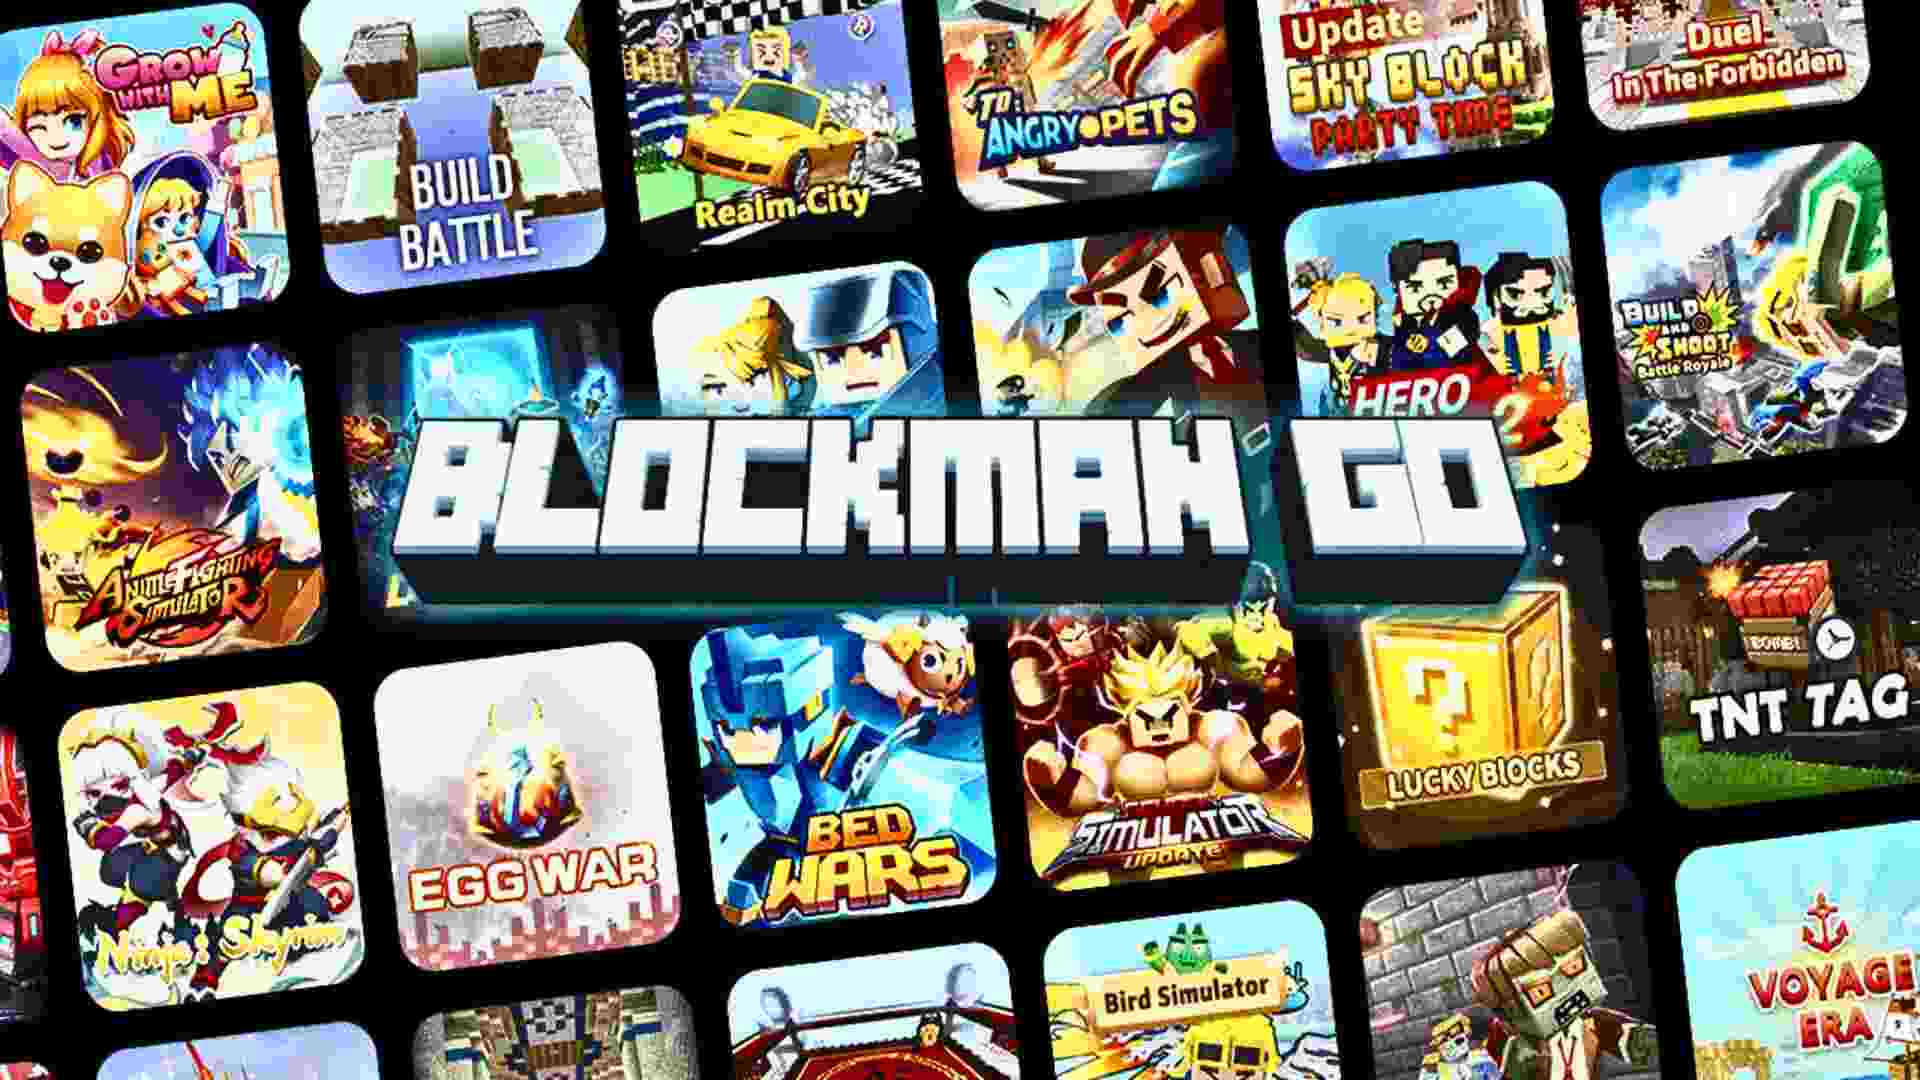 Blockman Go Adventure Mod Apk 